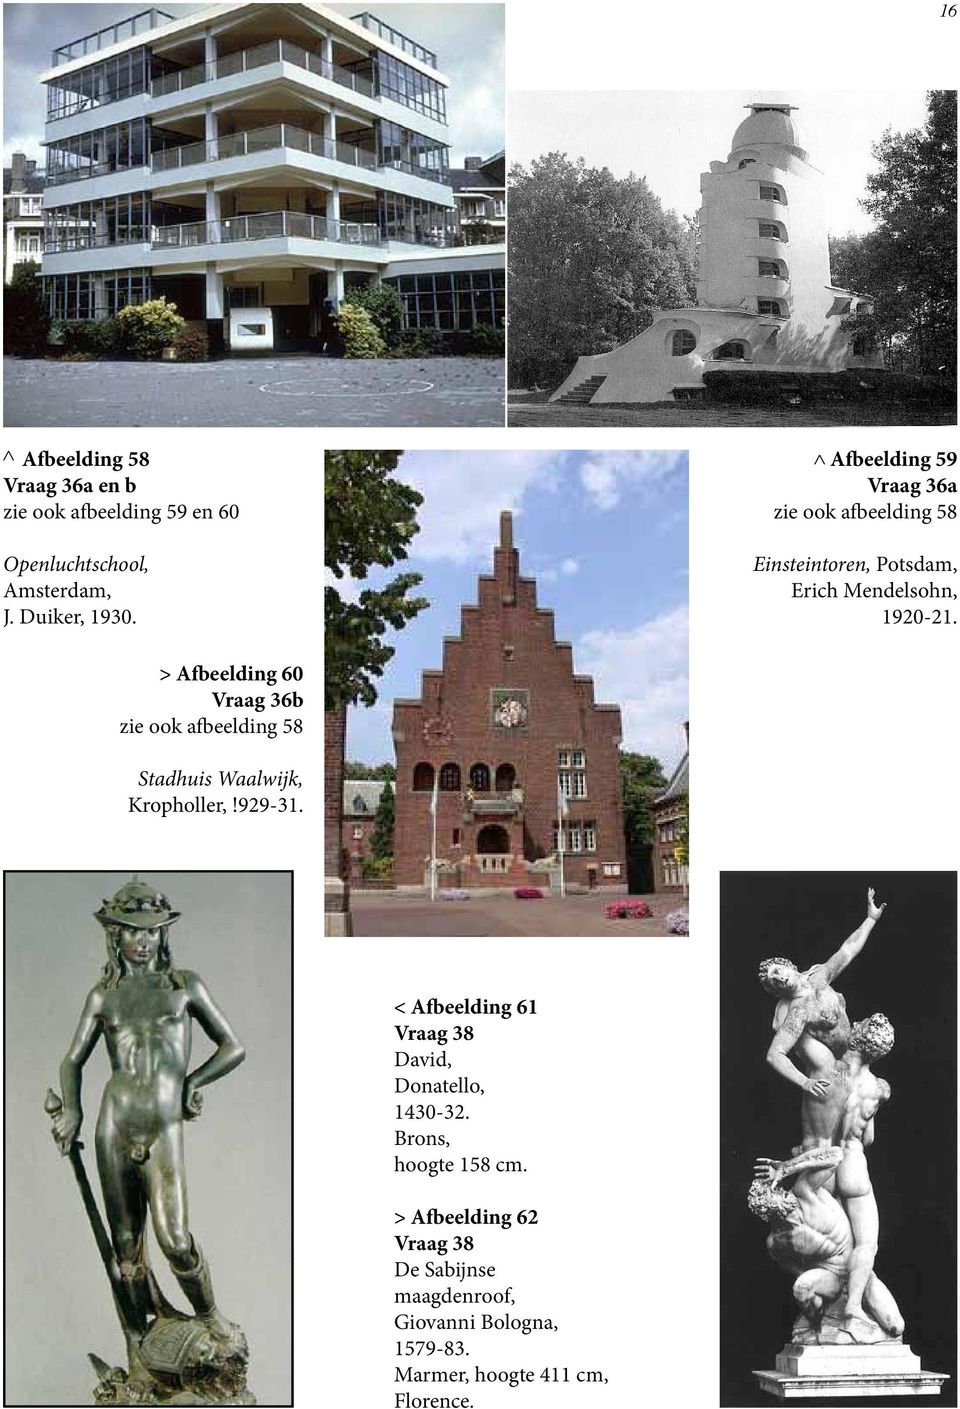 > Afbeelding 60 Vraag 36b zie ook afbeelding 58 Stadhuis Waalwijk, Kropholler,!929-31.